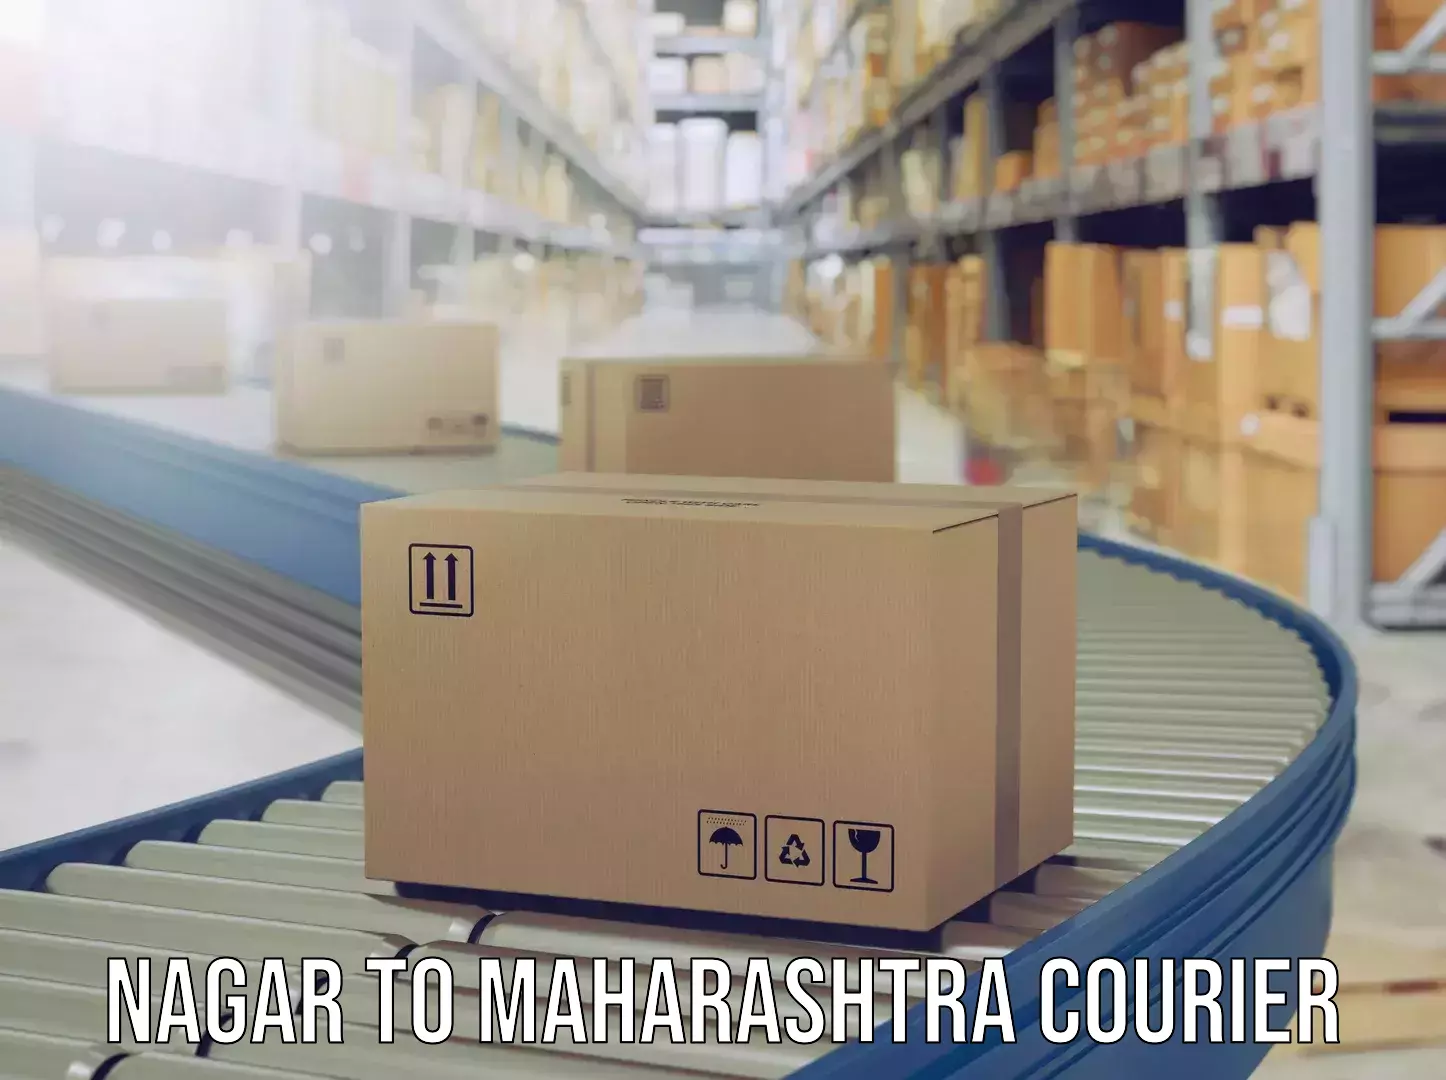 Luggage transport company Nagar to Maharashtra